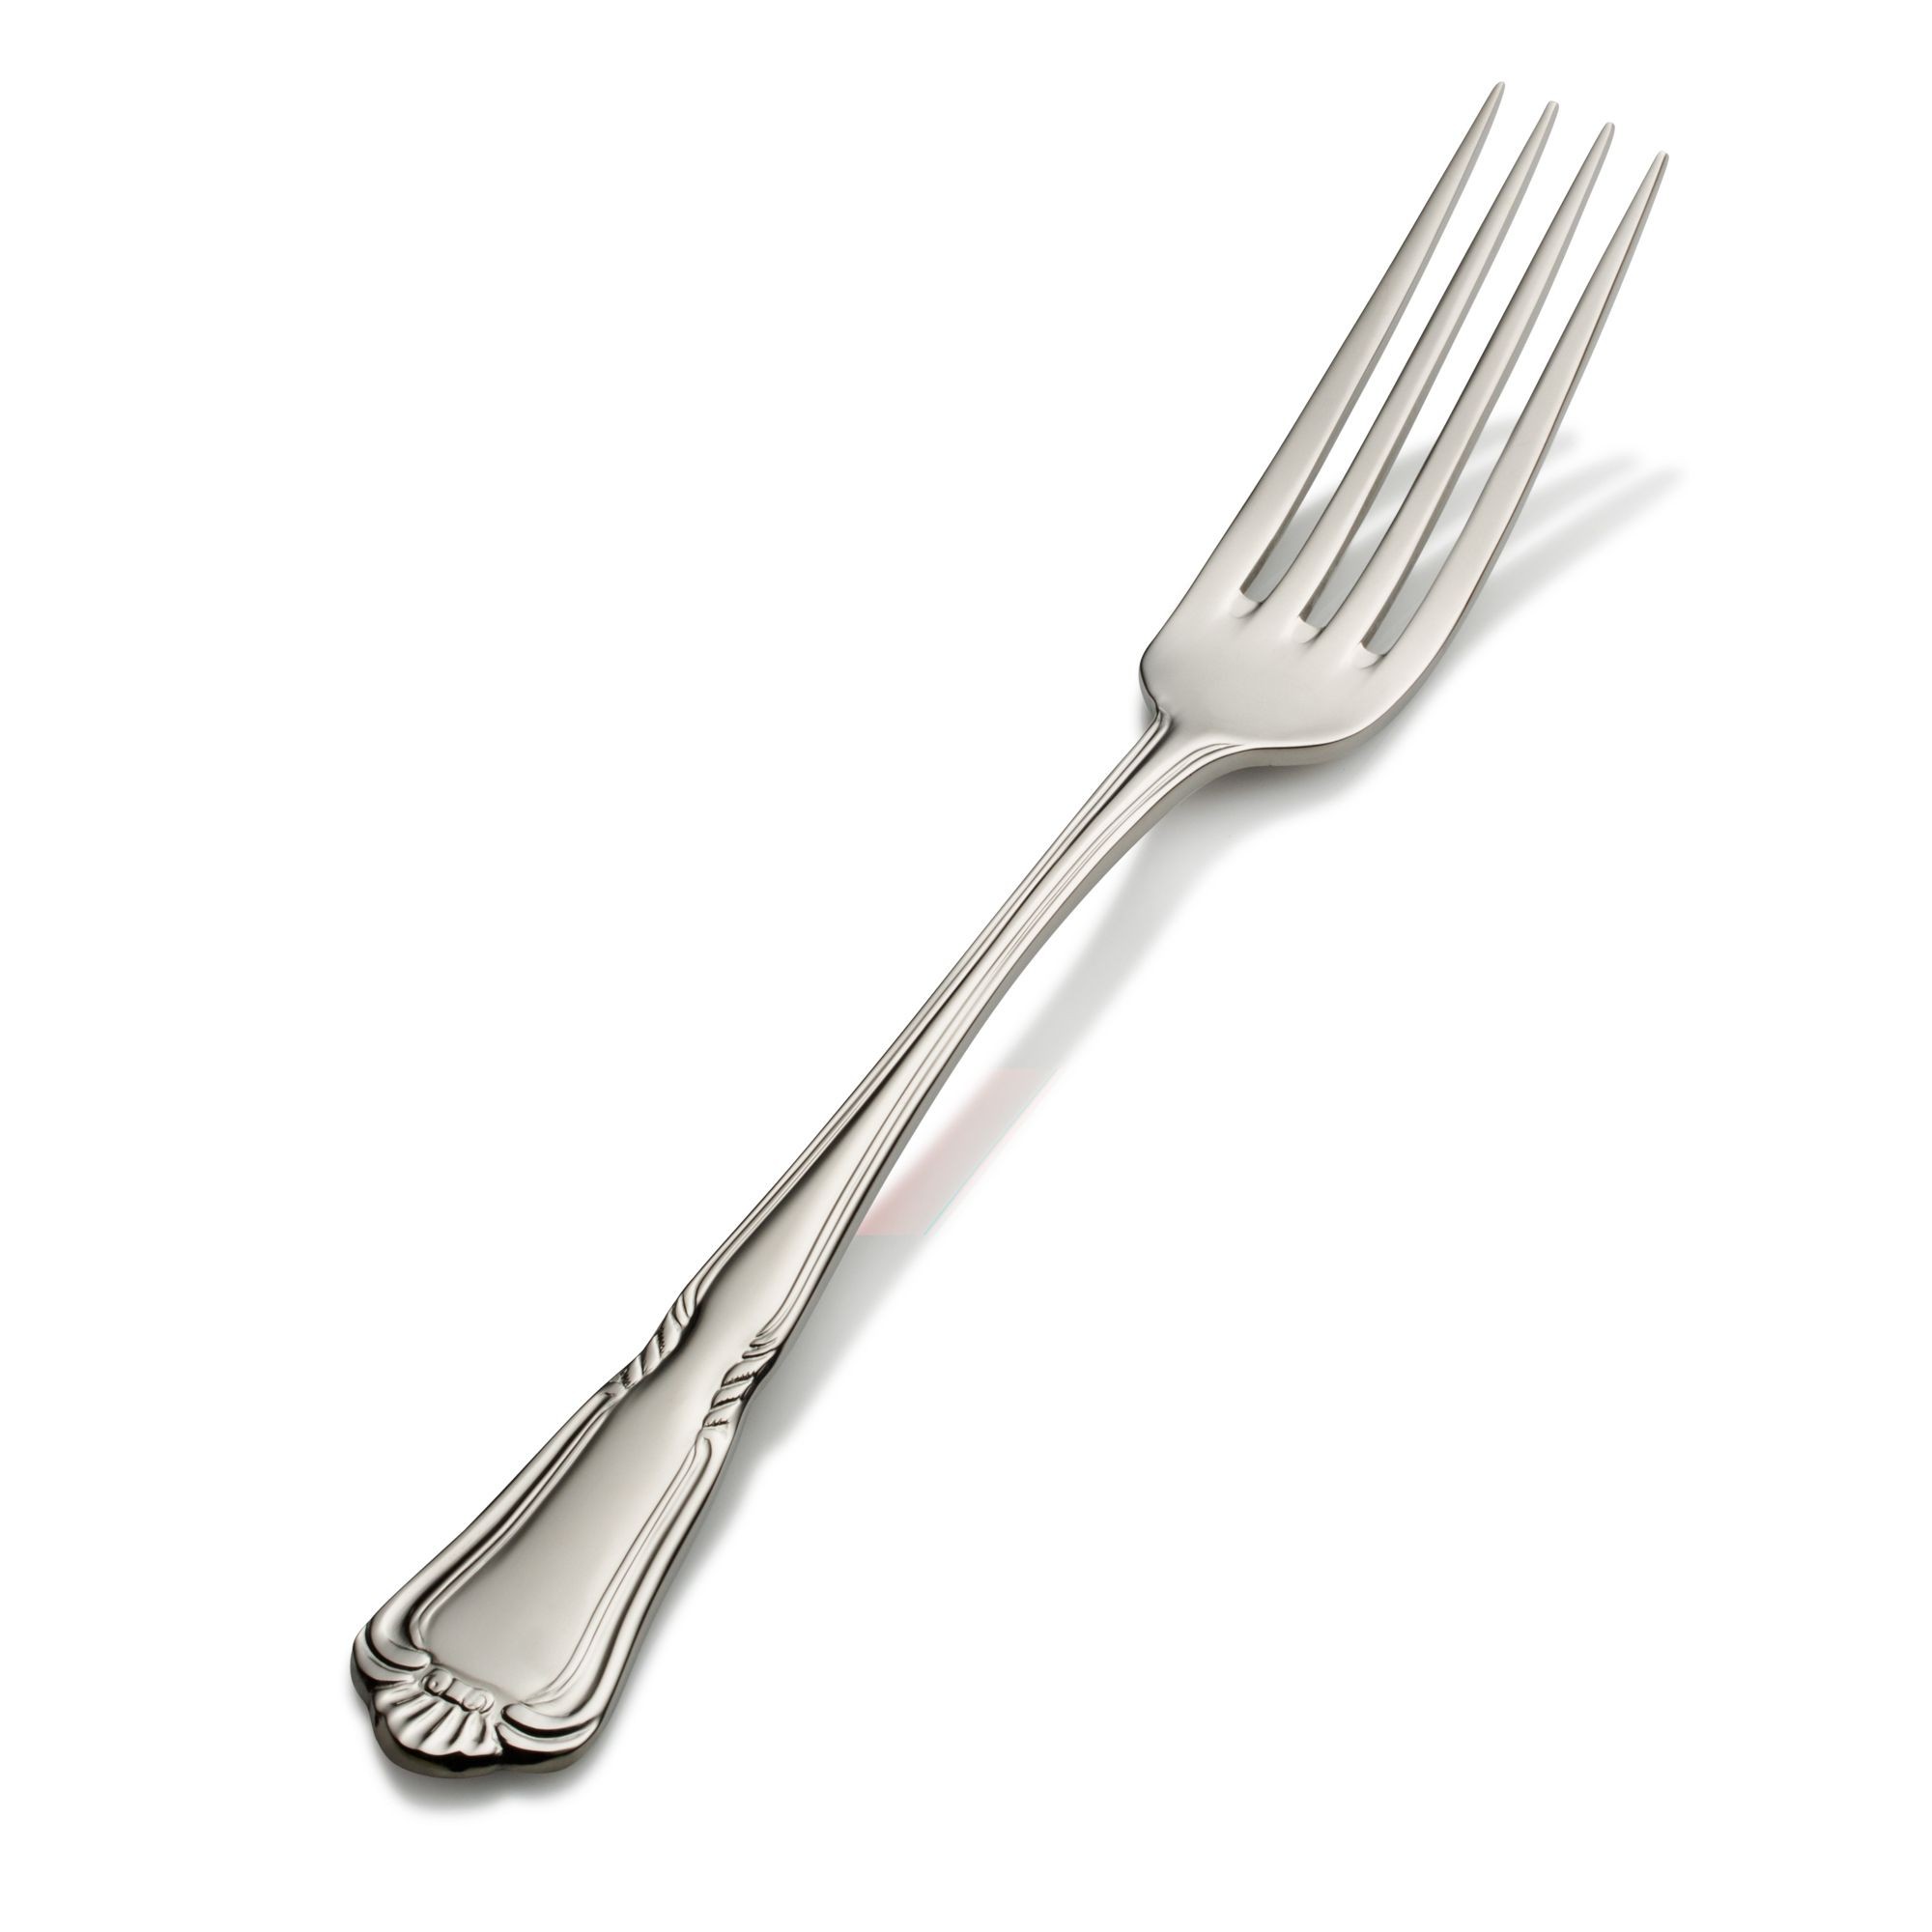 Bon Chef S1506 Sorento 18/8 Stainless Steel European Dinner Fork